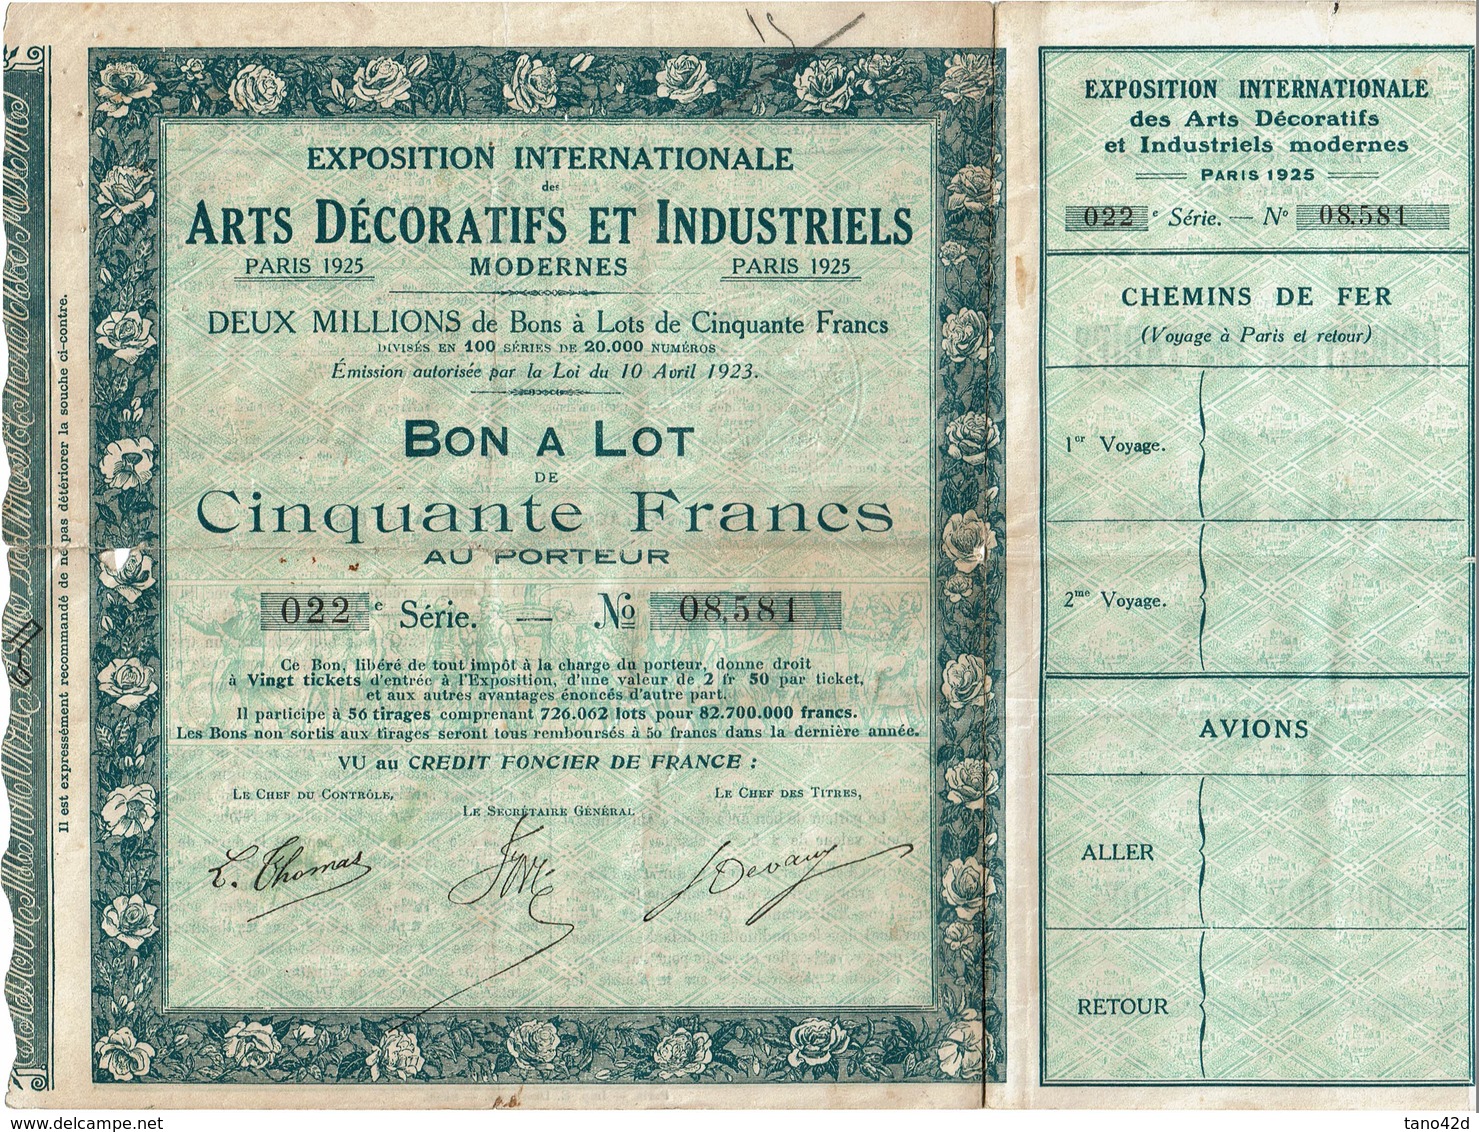 LBR26 - EXPOSITION INTERNATIONALE ARTS DECORATIFS PARIS 1925 BON A LOT N° 08.581 (TICKETS D'ENTREE DETACHES) - A - C